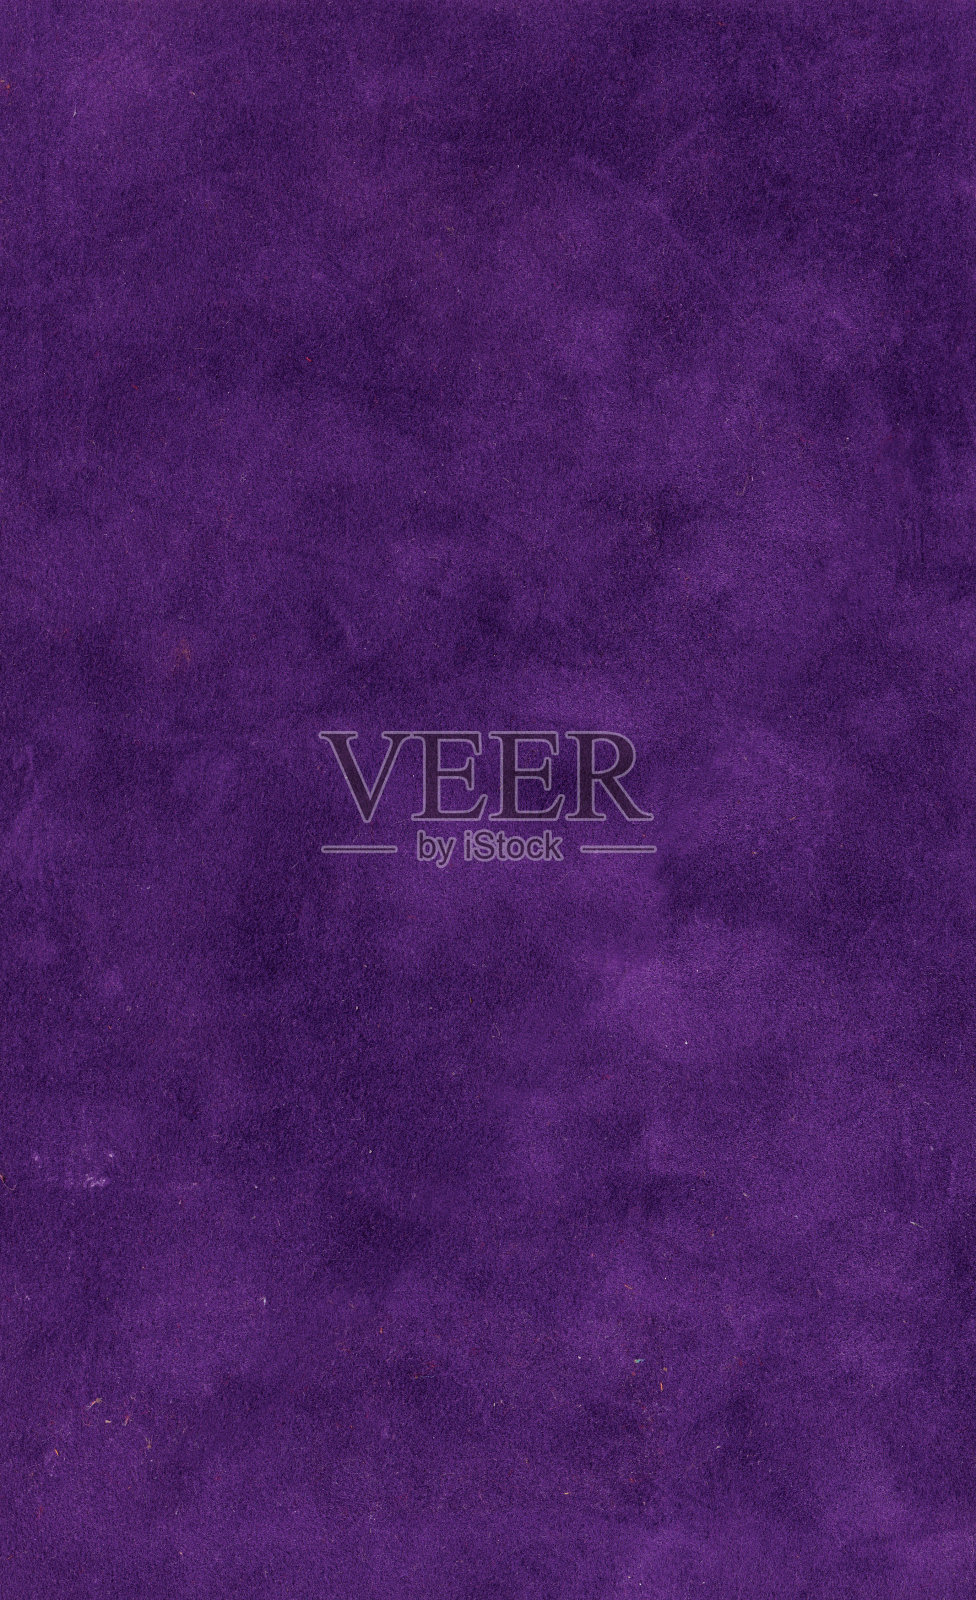 邋遢的暗紫色天鹅绒书皮XL照片摄影图片